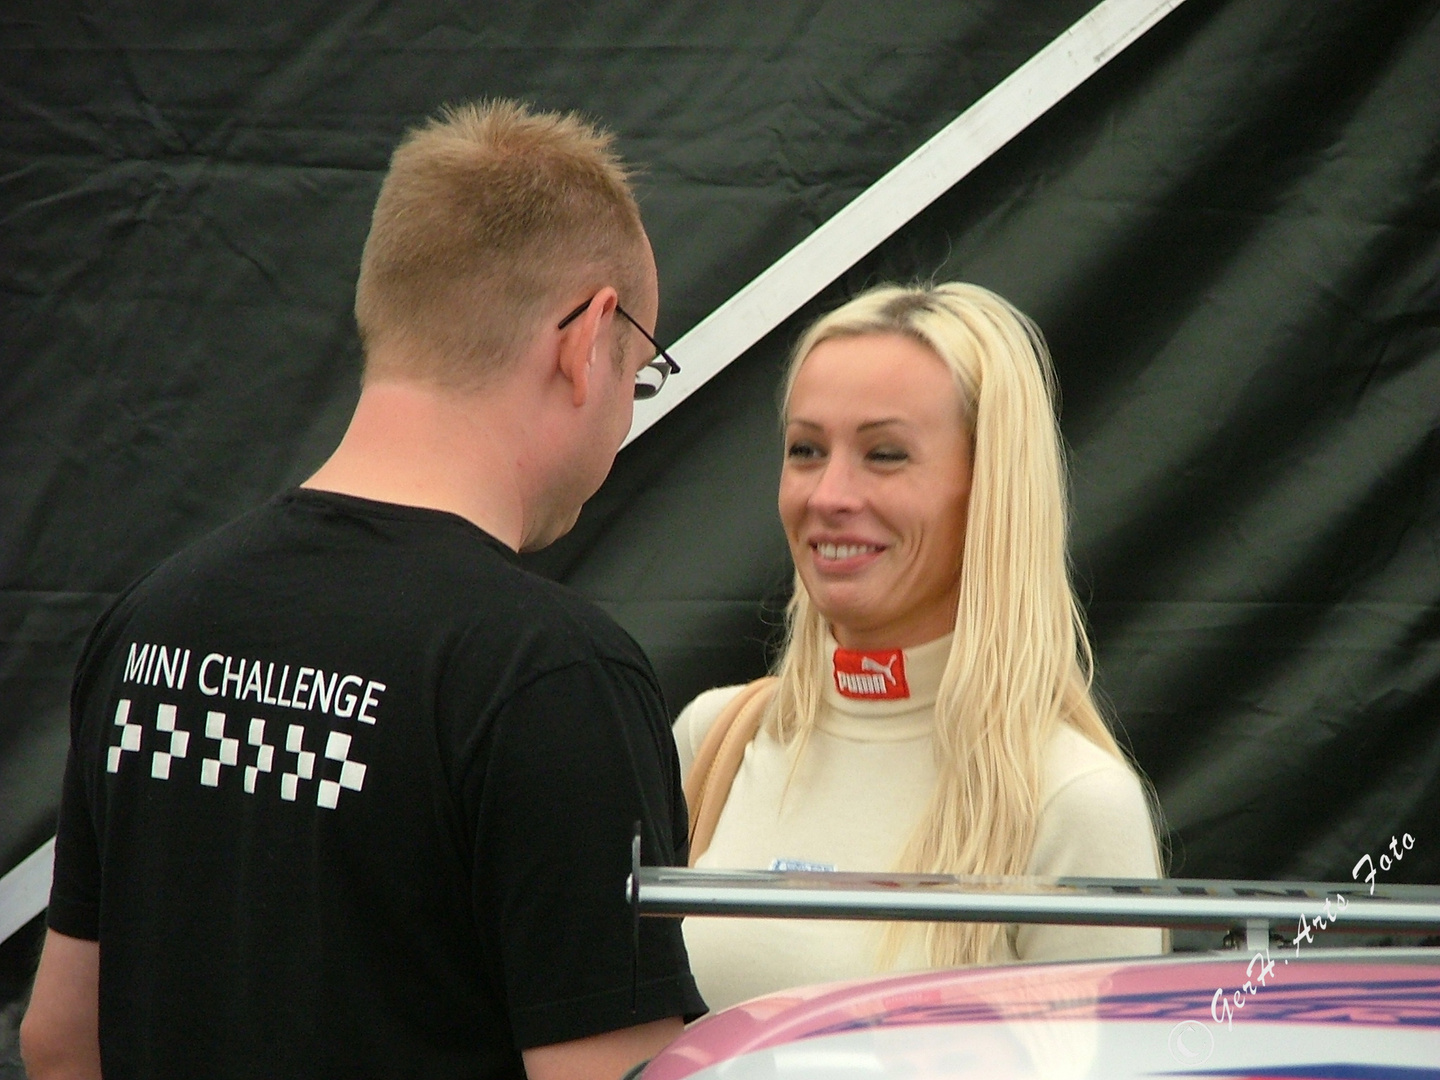 Cora Schumacher beim AVD Oldtimer Grand Prix 2005